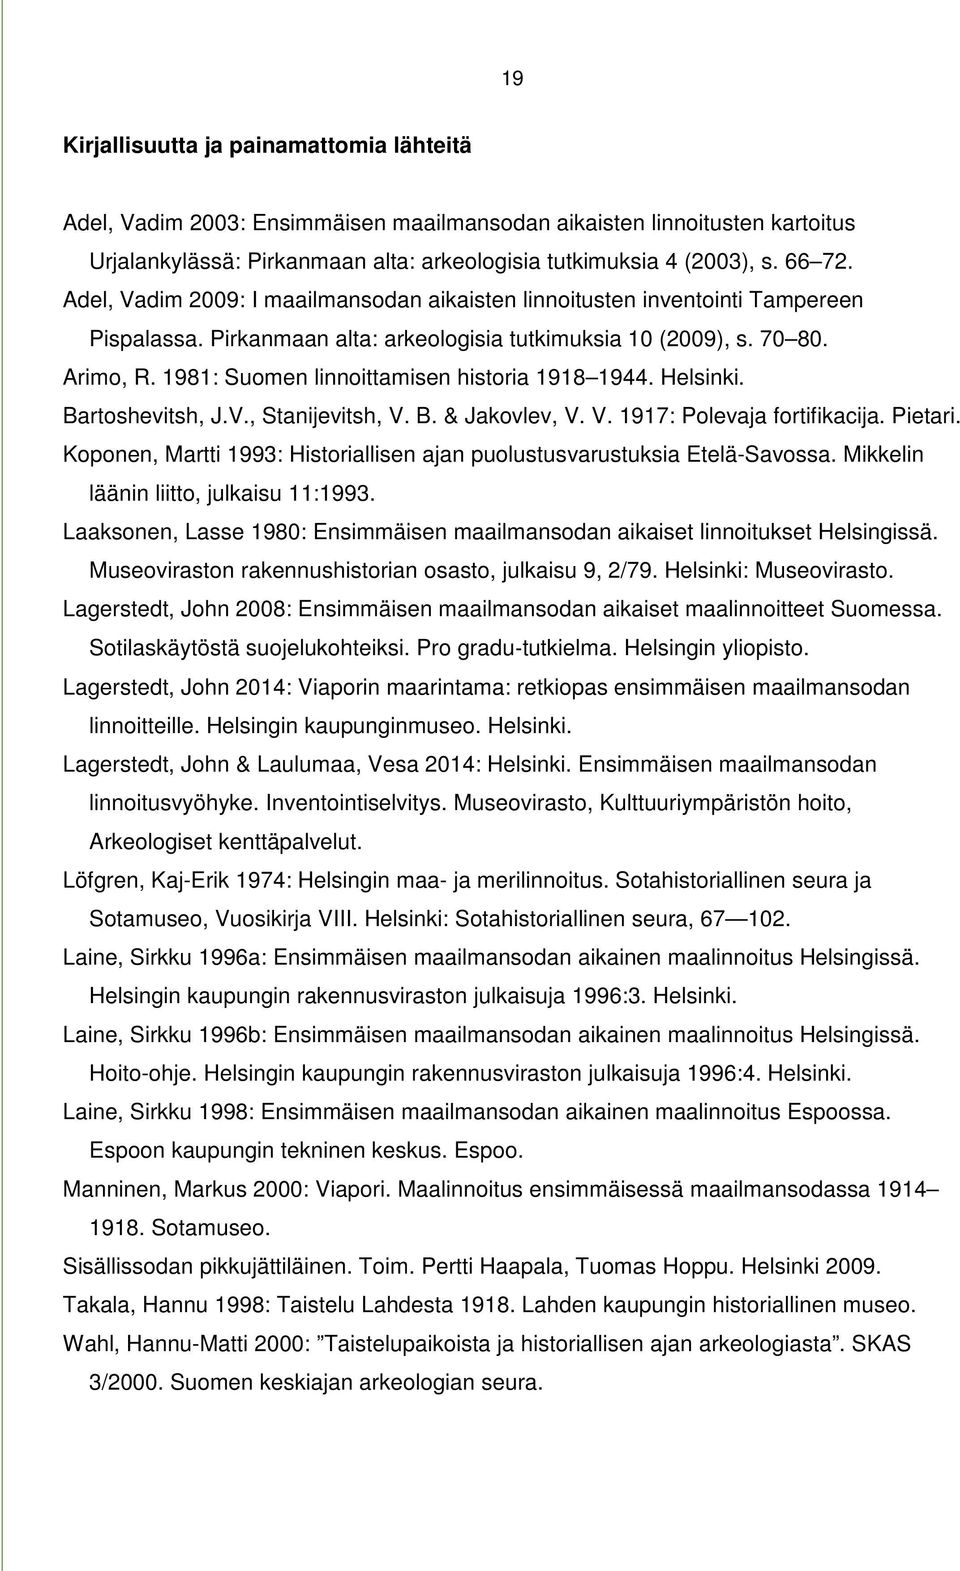 1981: Suomen linnoittamisen historia 1918 1944. Helsinki. Bartoshevitsh, J.V., Stanijevitsh, V. B. & Jakovlev, V. V. 1917: Polevaja fortifikacija. Pietari.